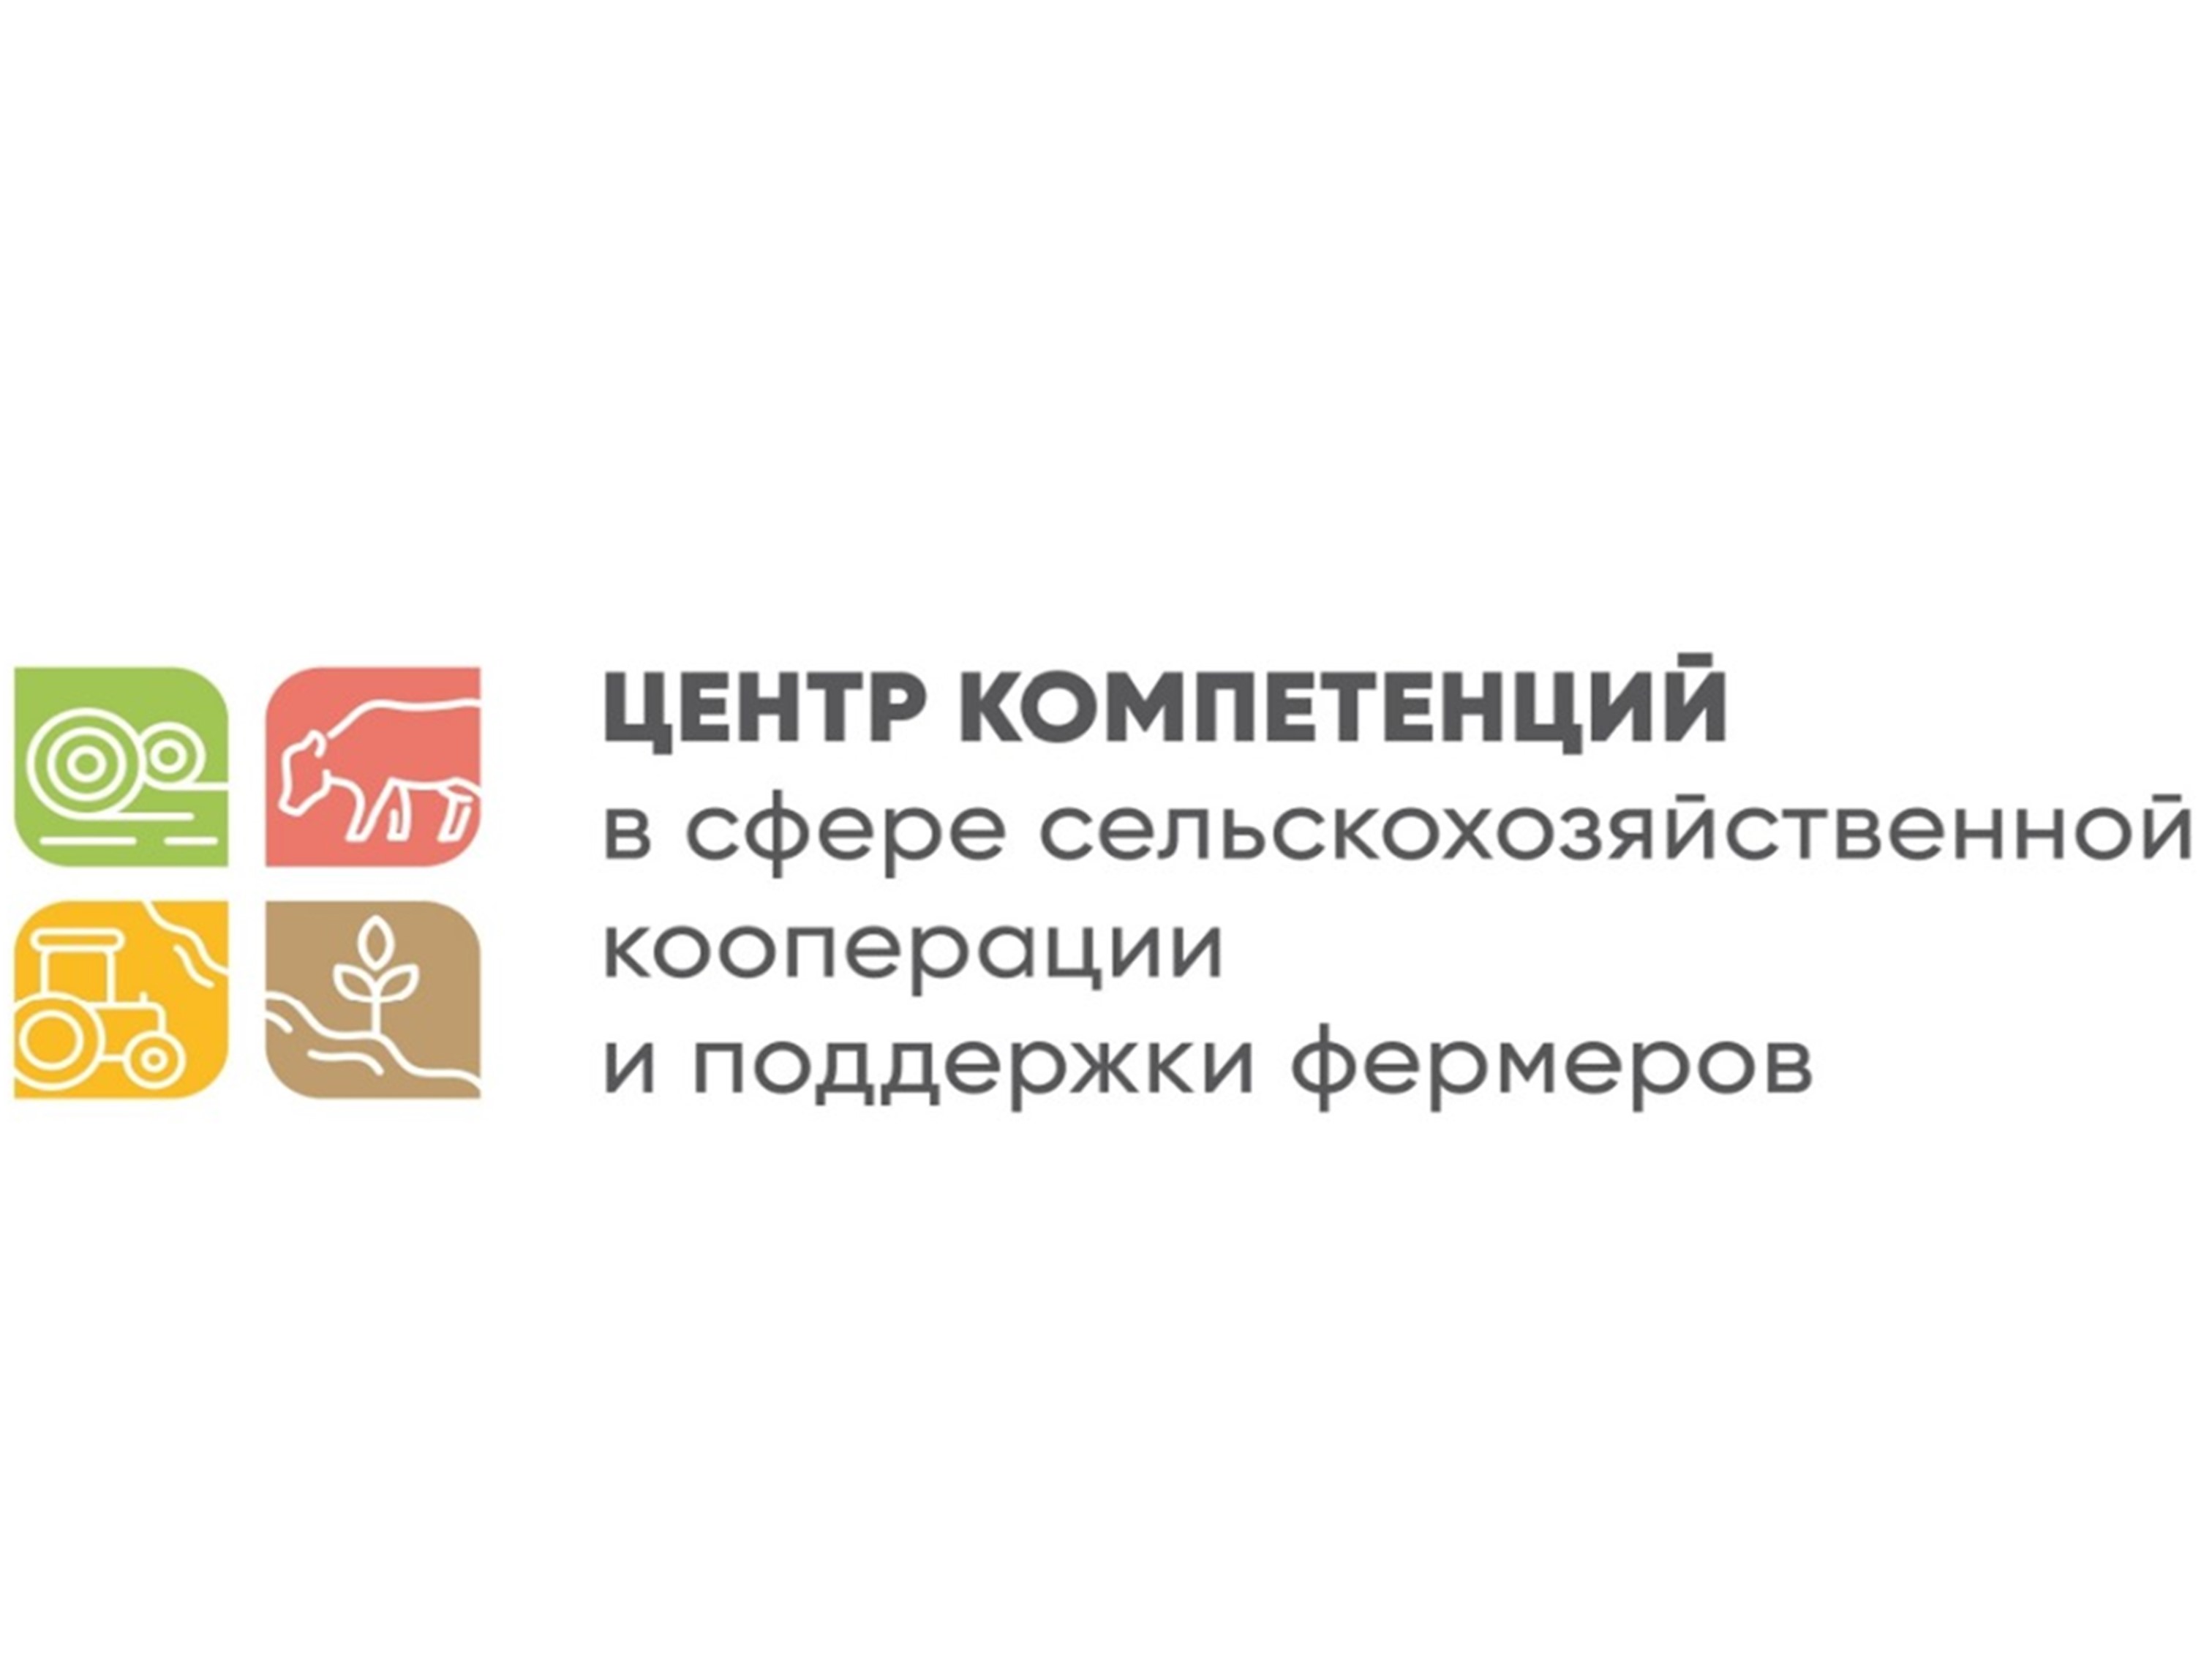 Меры государственной поддержки сельхозтоваропроизводителей Калужской области.